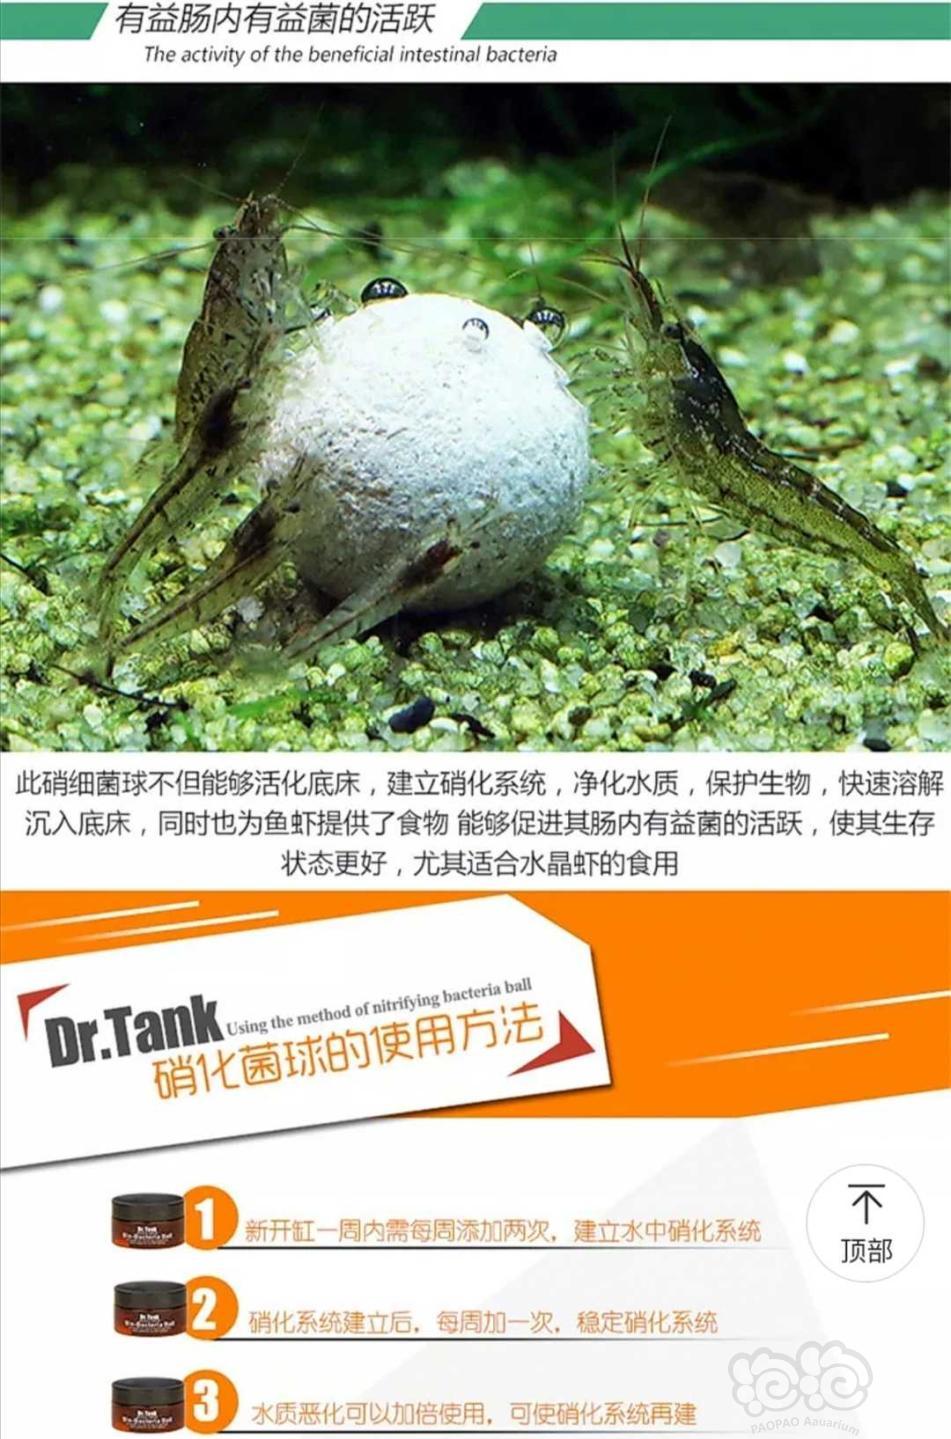 【用品】2019-11-01#RMB拍卖坦克二代硝化细菌球三粒装*3盒-图2